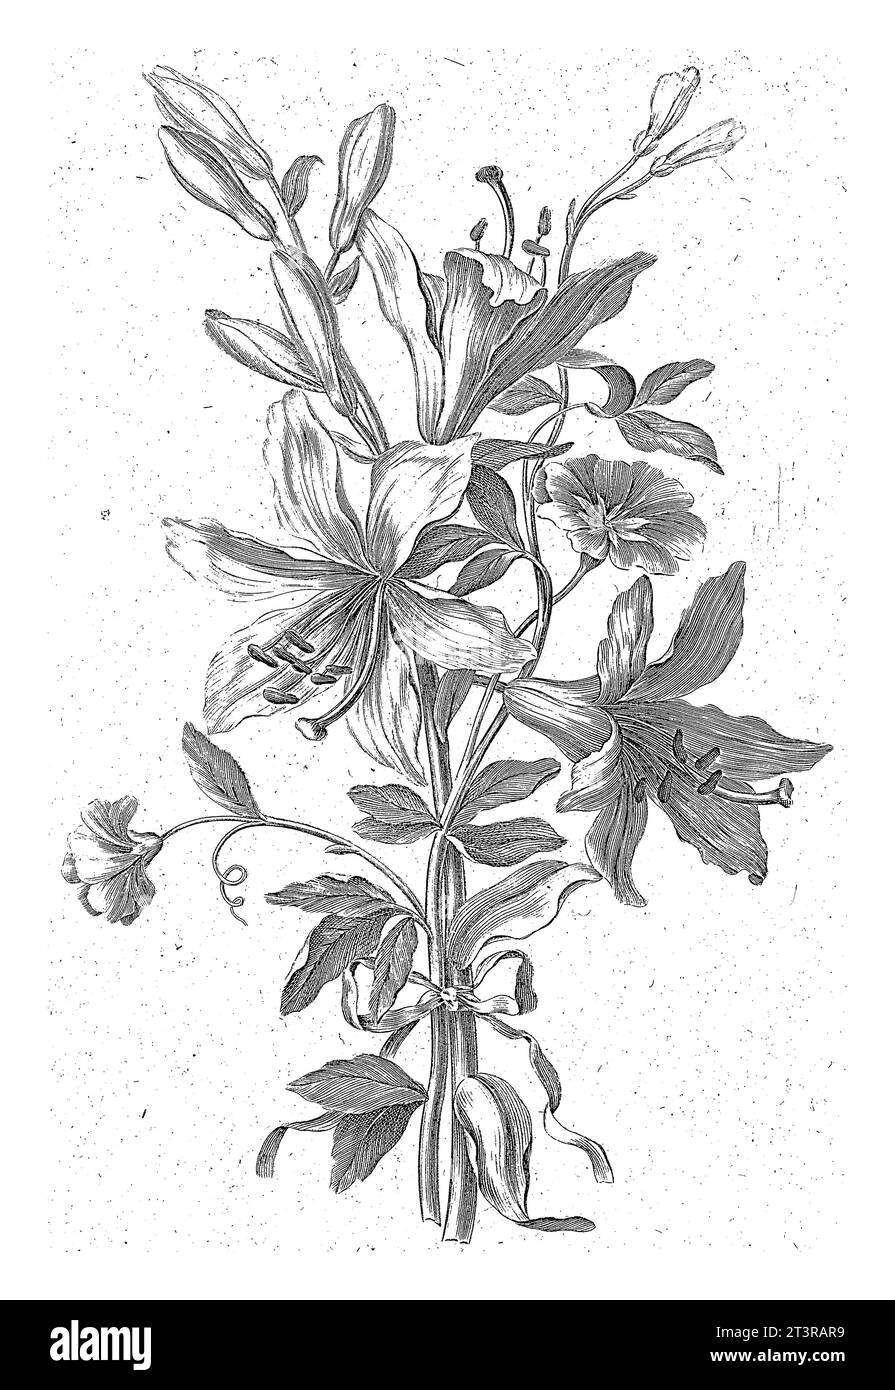 Blumenstrauß mit Lilie, Jean Jacques Avril (I), nach Jean Baptiste Monnoyer, 1754 - 1794 die Blumen sind mit einem Band zusammengebunden. Stockfoto